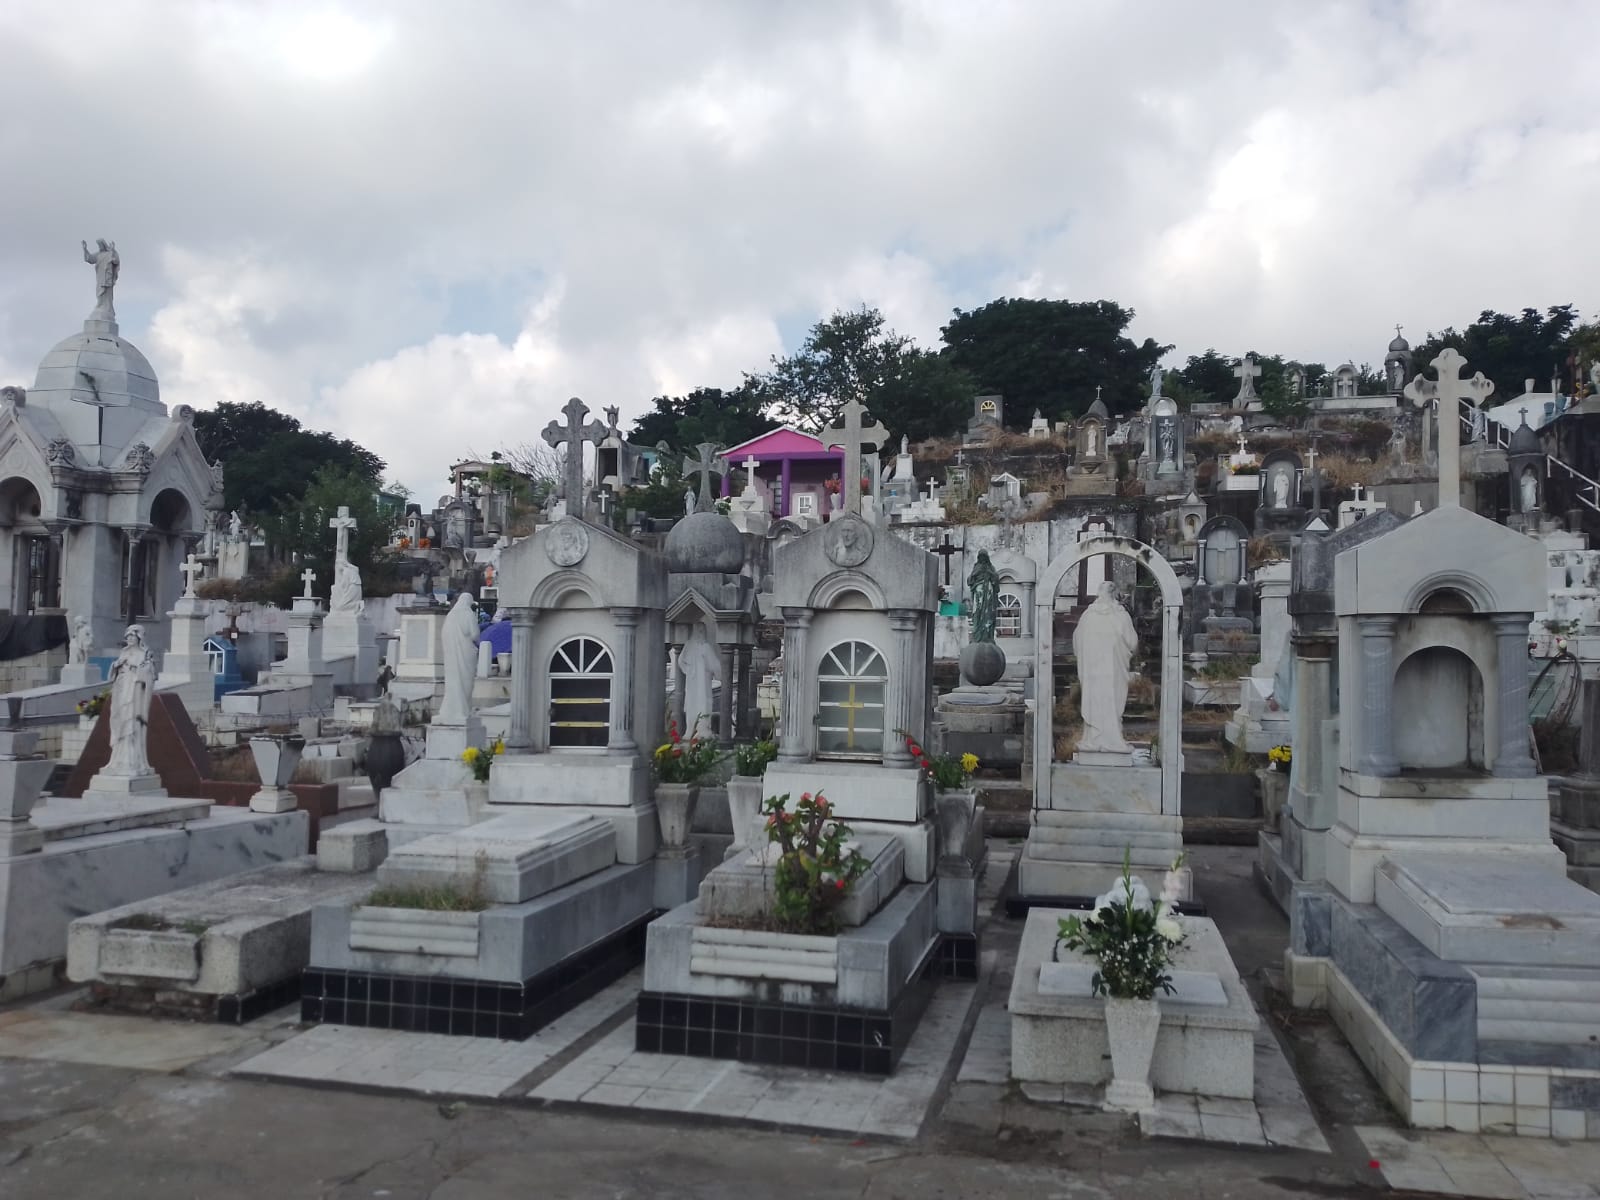 Incrementa flujo de visitantes a cementerios de Veracruz